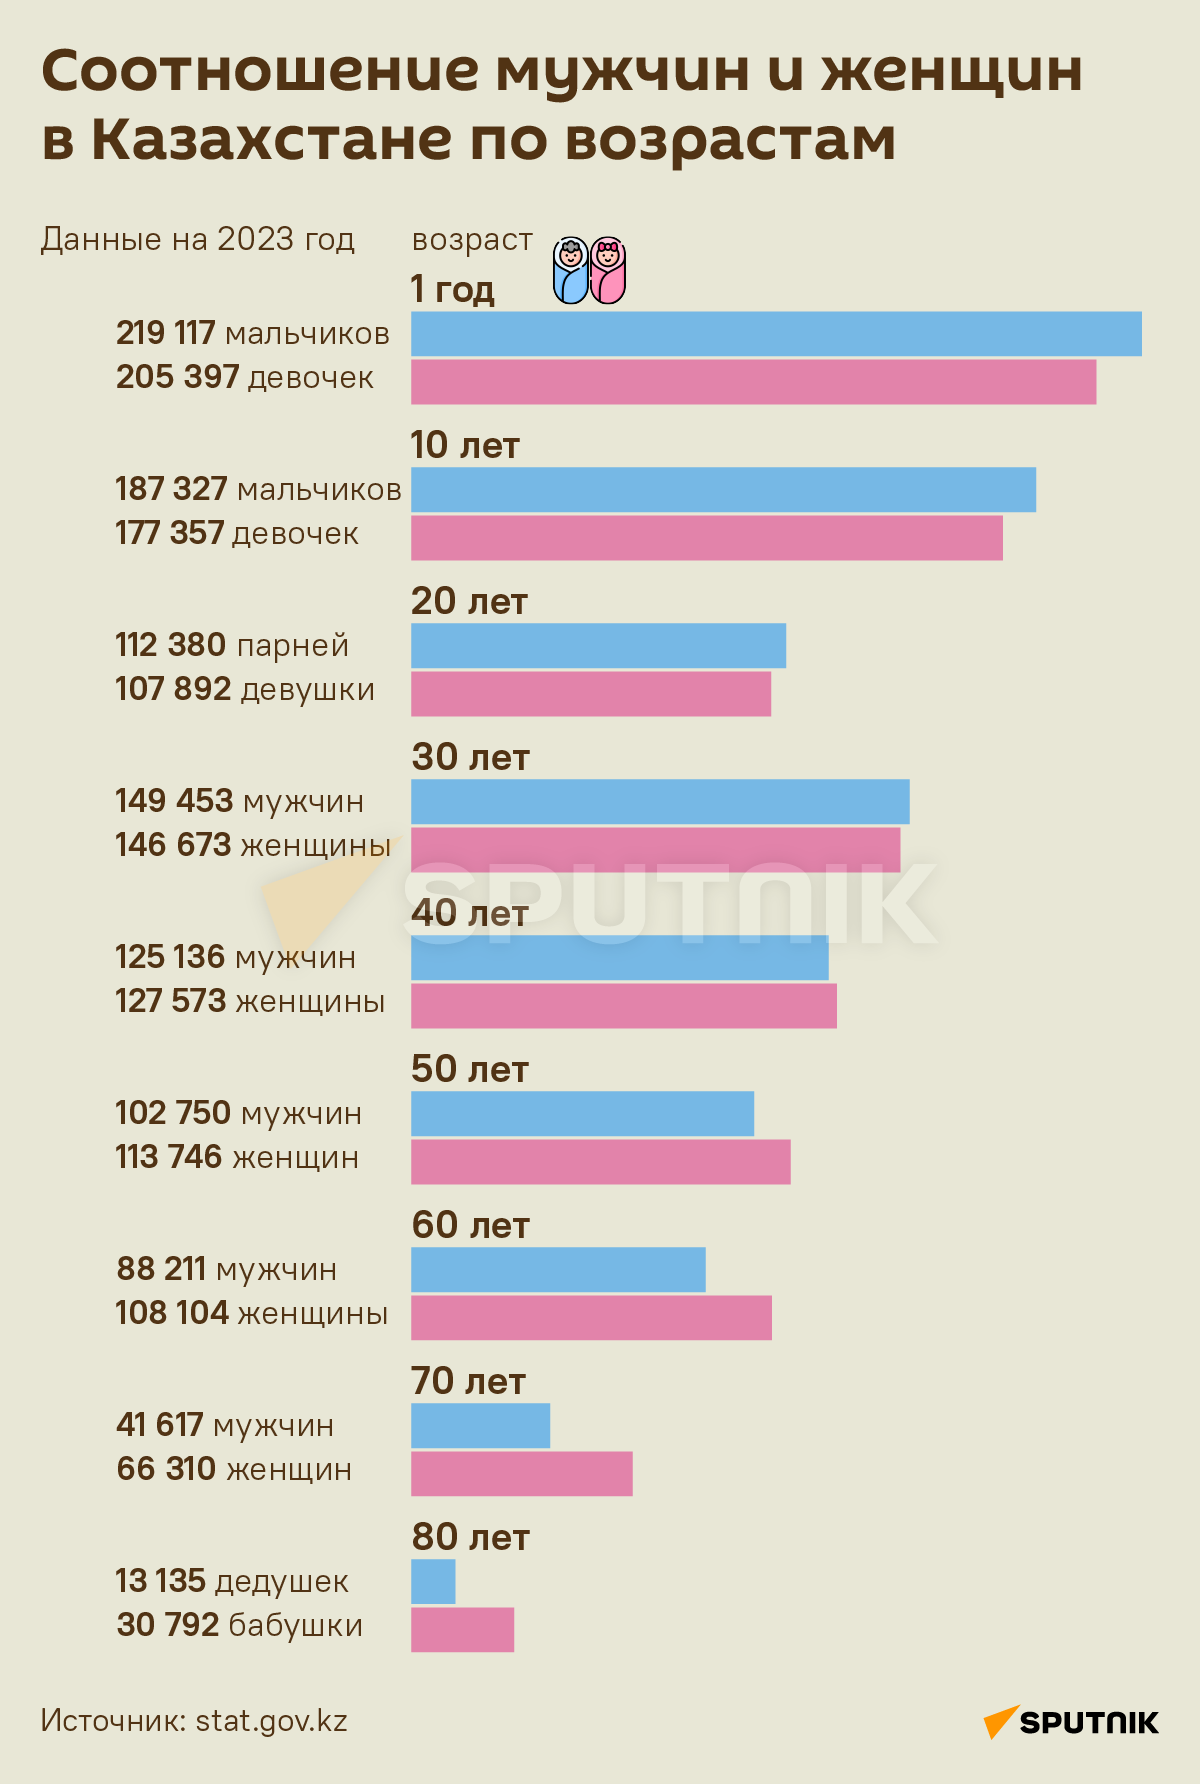 Соотношение женщин и мужчин в россии 2023